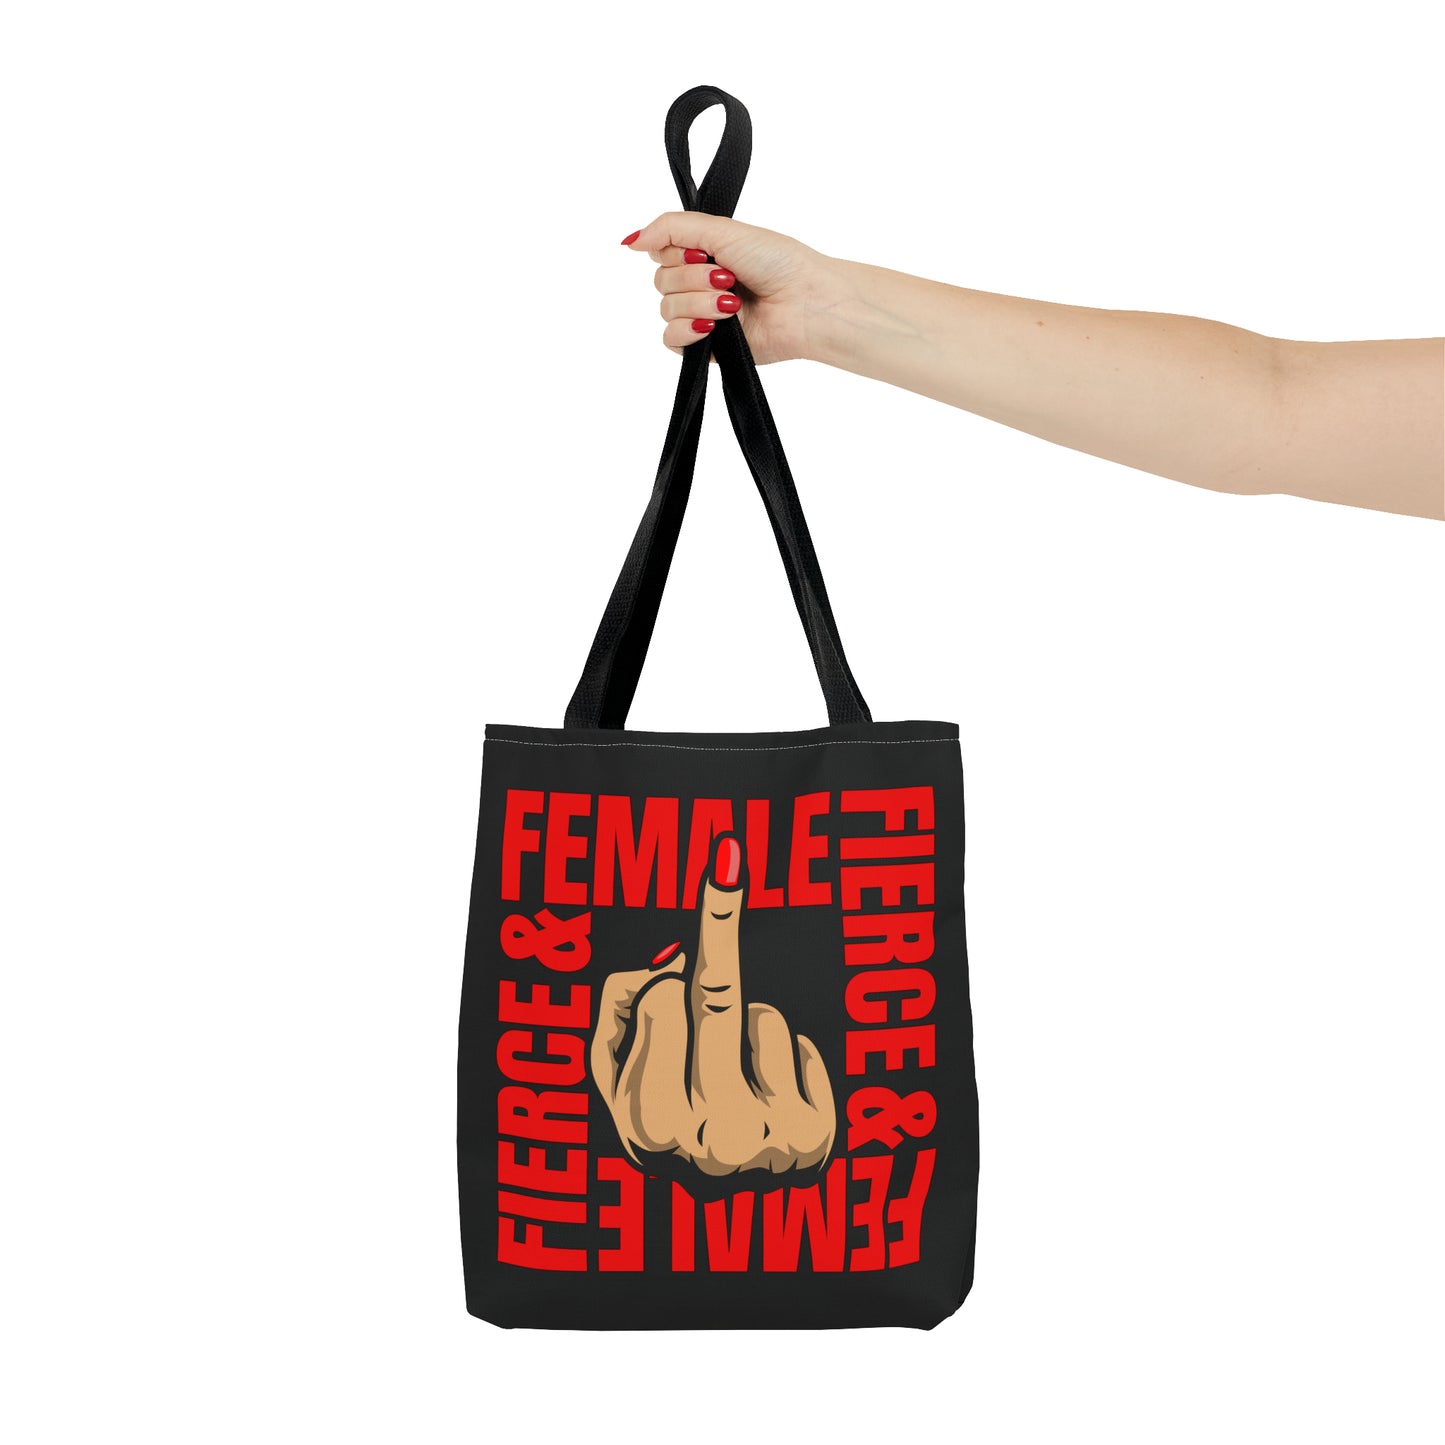 "Female & Fierce" - Tote Bag